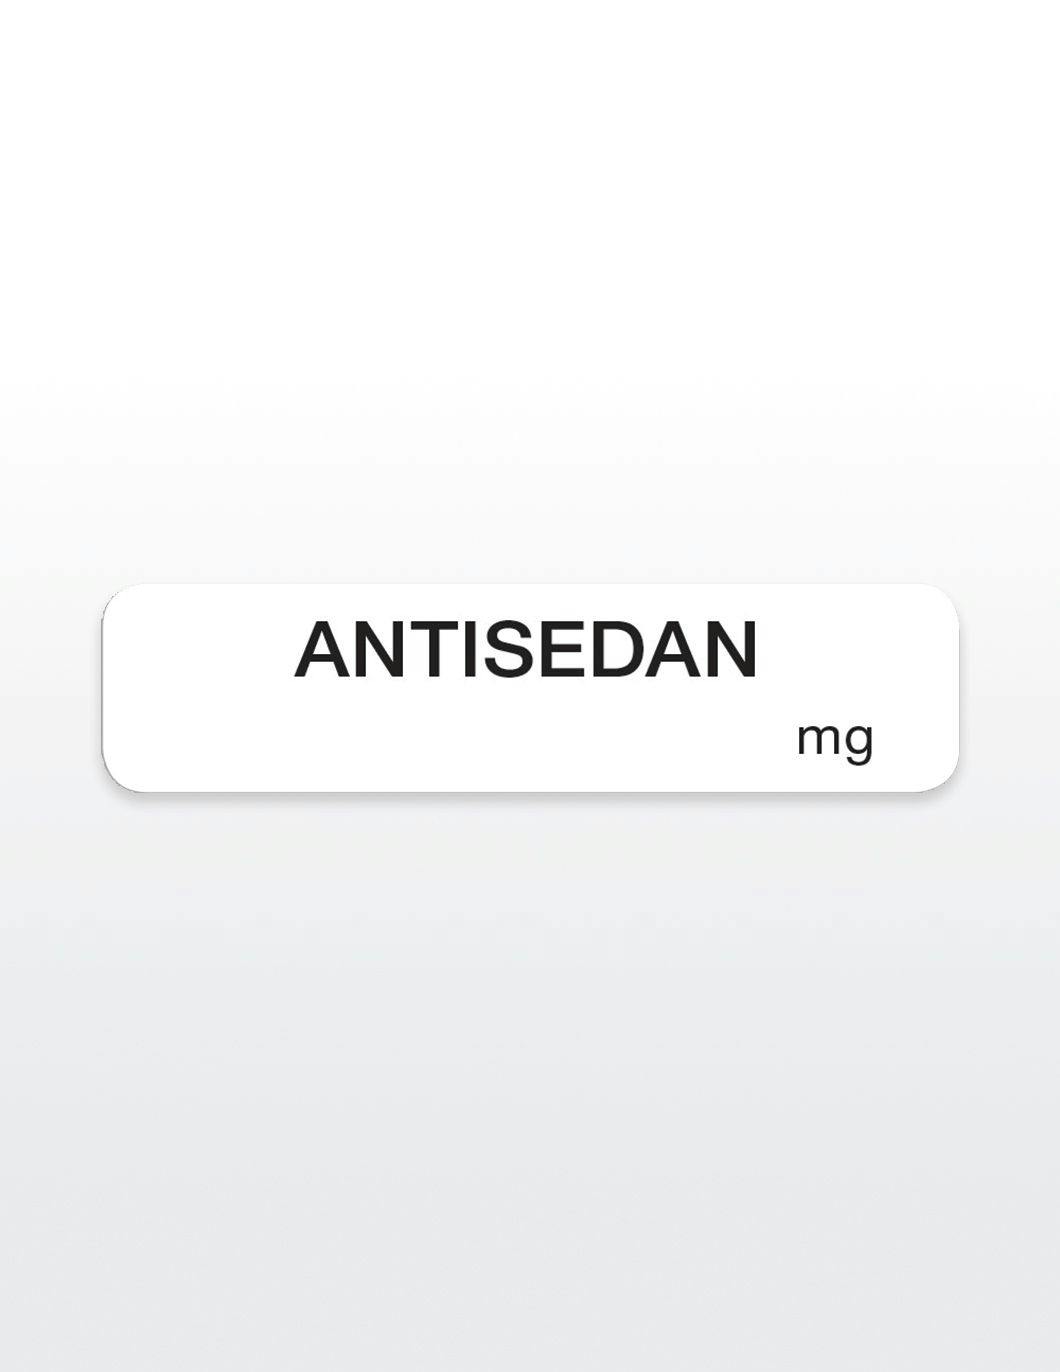 antisedan-drug-syringe-stickers